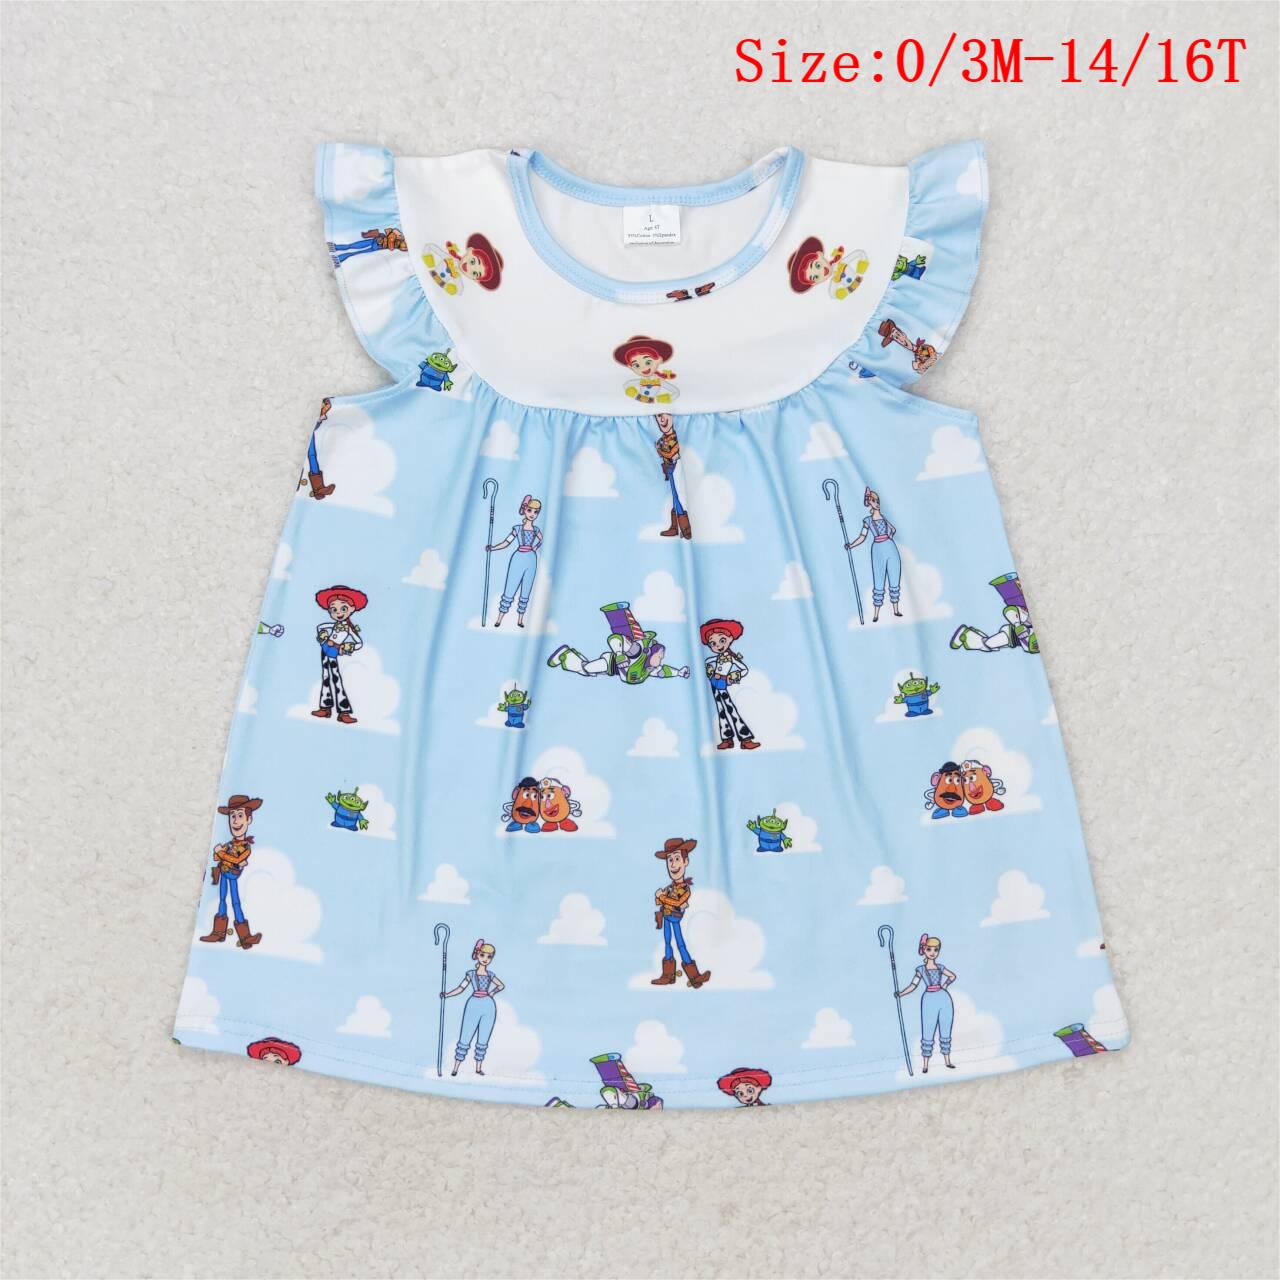 GT0592 Blue Cartoon Toys Print Girls Summer Tee Shirts Top